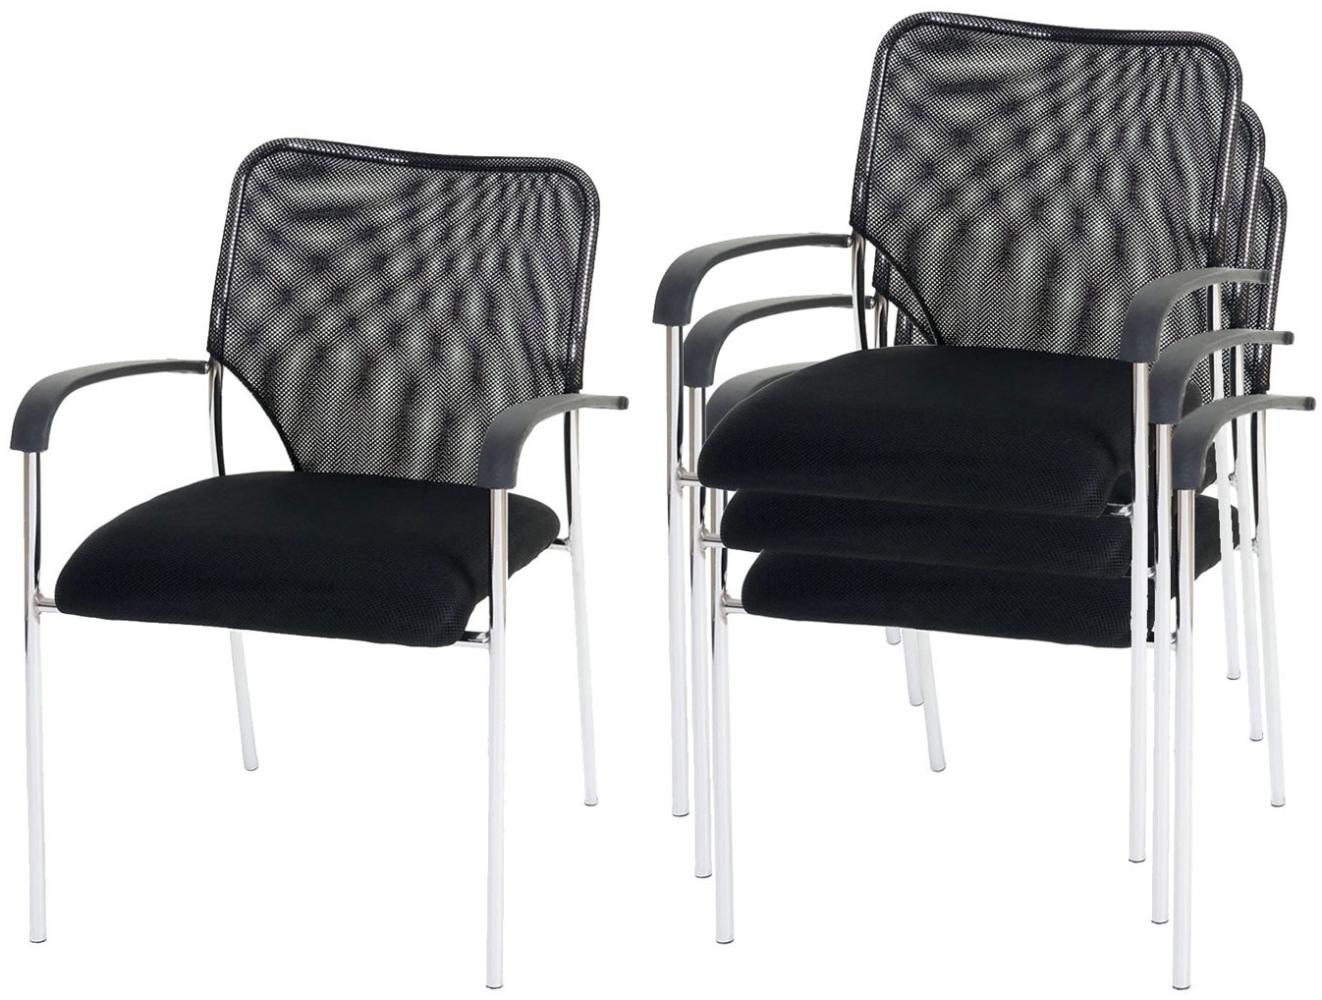 4er-Set Besucherstuhl Tulsa, Konferenzstuhl stapelbar, Stoff/Textil ~ Sitz schwarz, Rückenfläche schwarz Bild 1